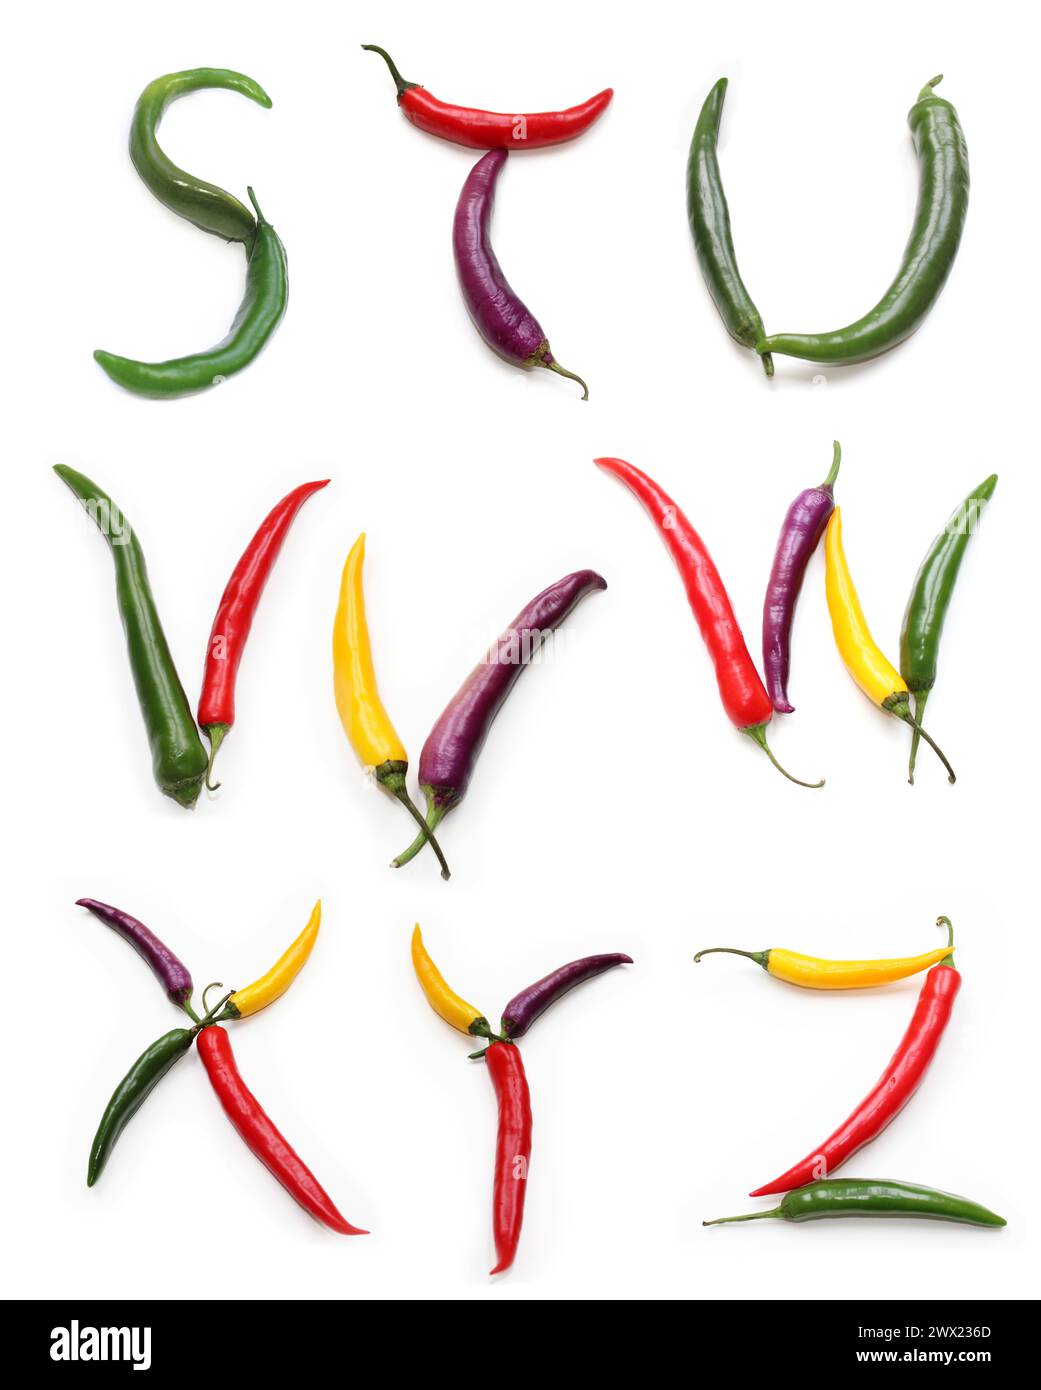 Buchstabe s t u V W x y z von Chilischote, rote gelbe lila grüne Chilis, alphabetische Großbuchstaben aus Gemüse, für Menütext, Enzyklopädie Stockfoto